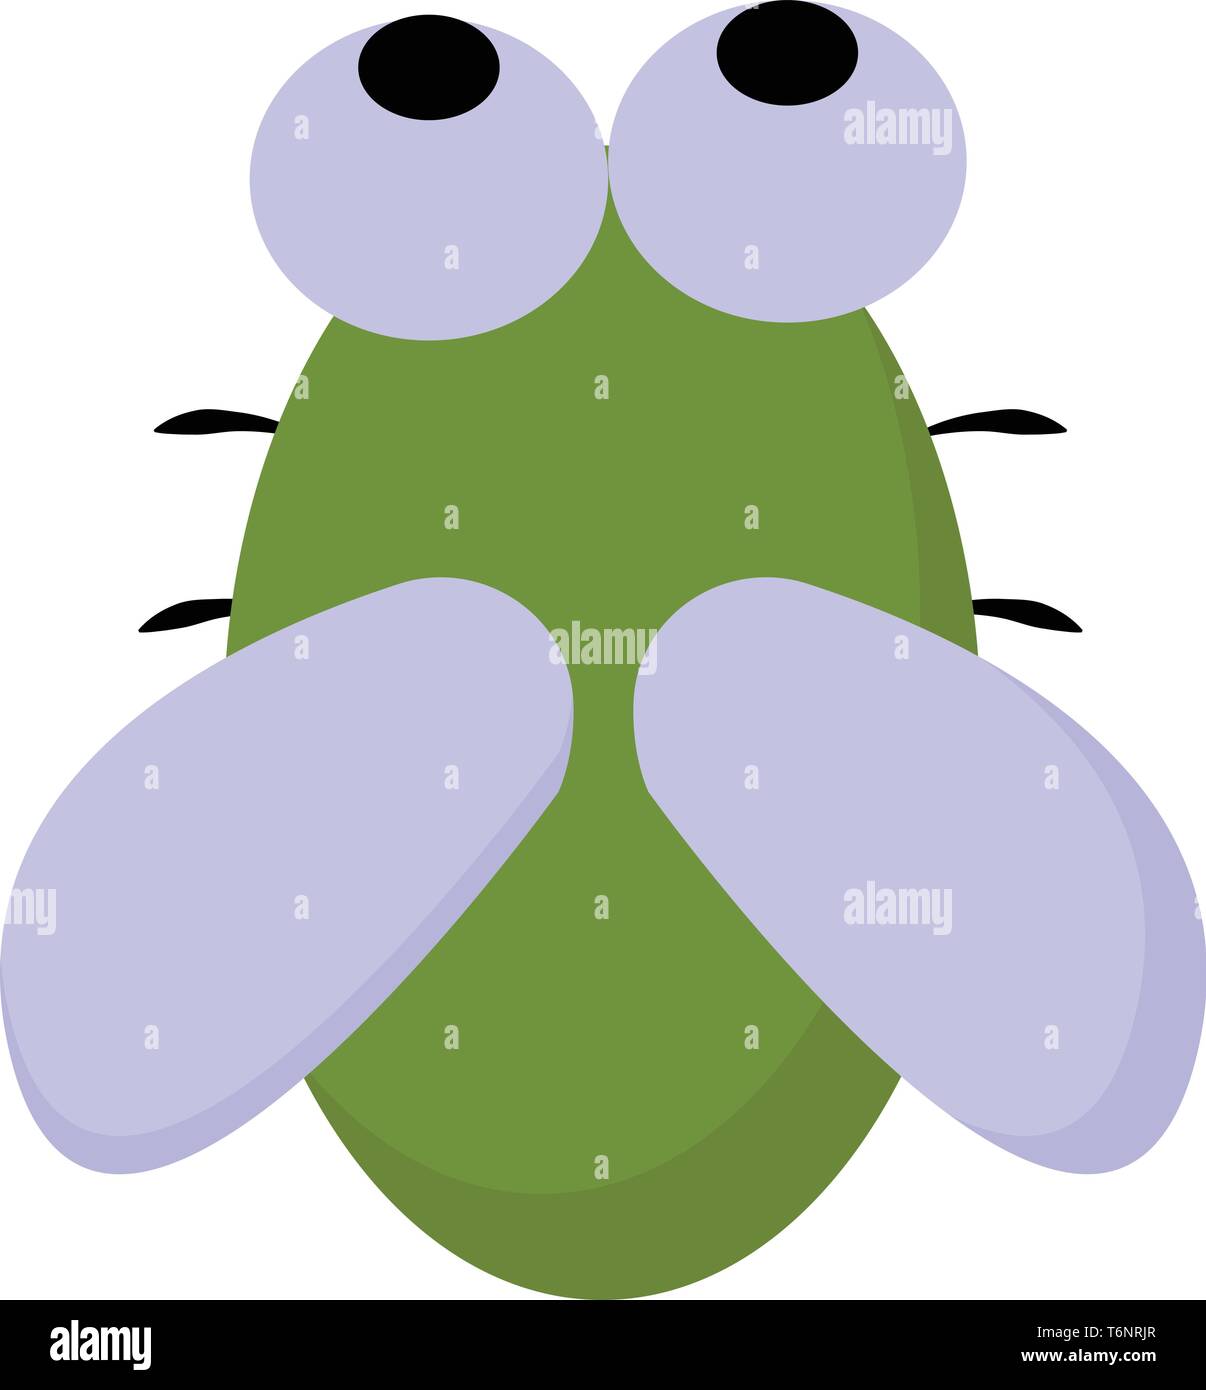 Cartoon carino-piccolo bug verde con colorati di nero gambe occhi sporgenti e le ali di colore blu colore del vettore di disegno o illustrazione Illustrazione Vettoriale